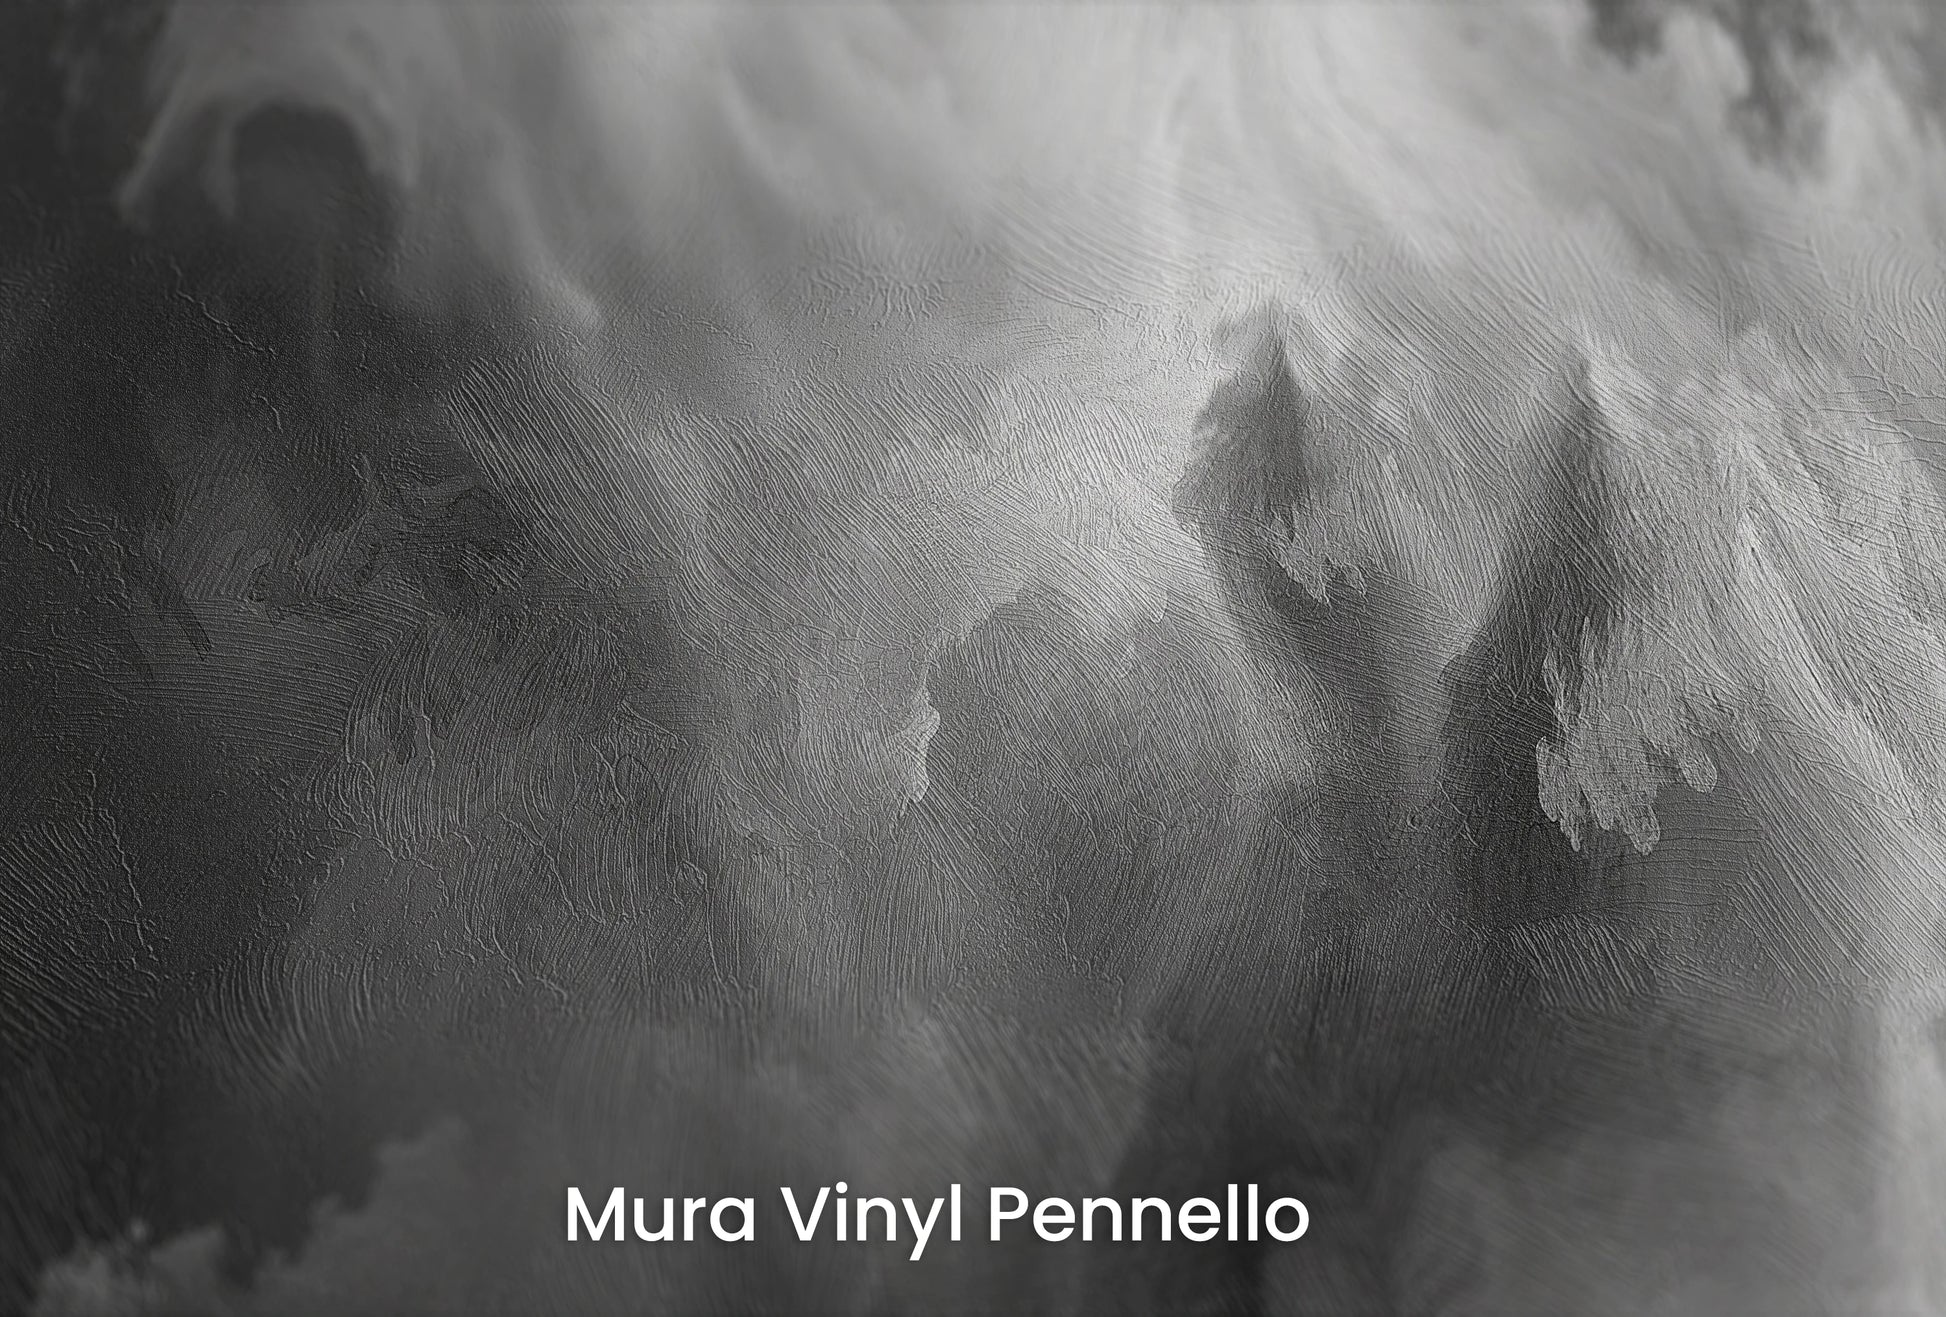 Zbliżenie na artystyczną fototapetę o nazwie Abstract Storm na podłożu Mura Vinyl Pennello - faktura pociągnięć pędzla malarskiego.